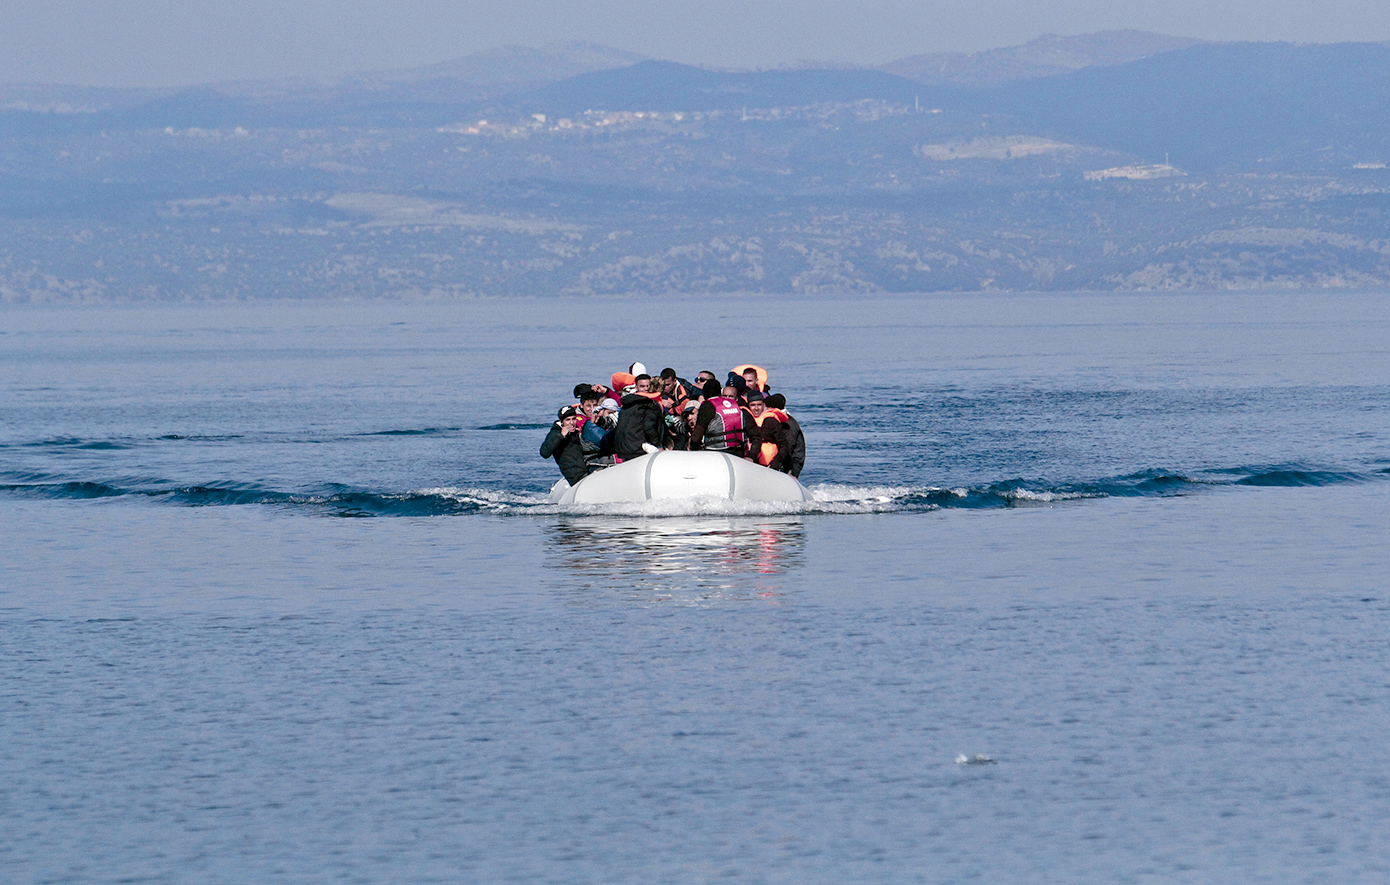 Βάρκα με 33 μετανάστες εντοπίστηκε νότια της Κρήτης